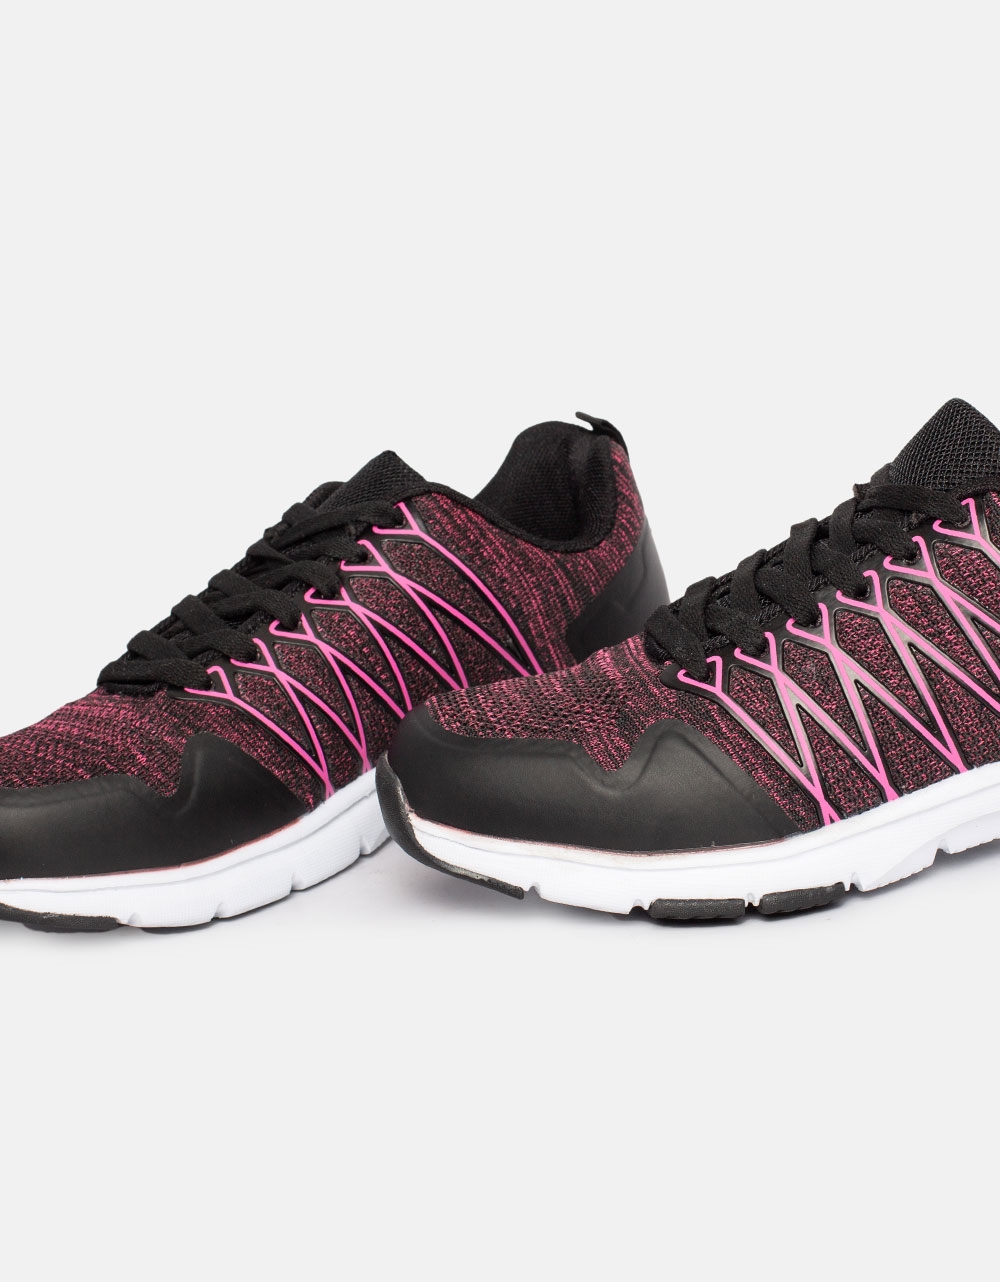 Εικόνα από Γυναικεία sneakers σε συνδυασμό χρωμάτων και υλικών Μαύρο/Ροζ